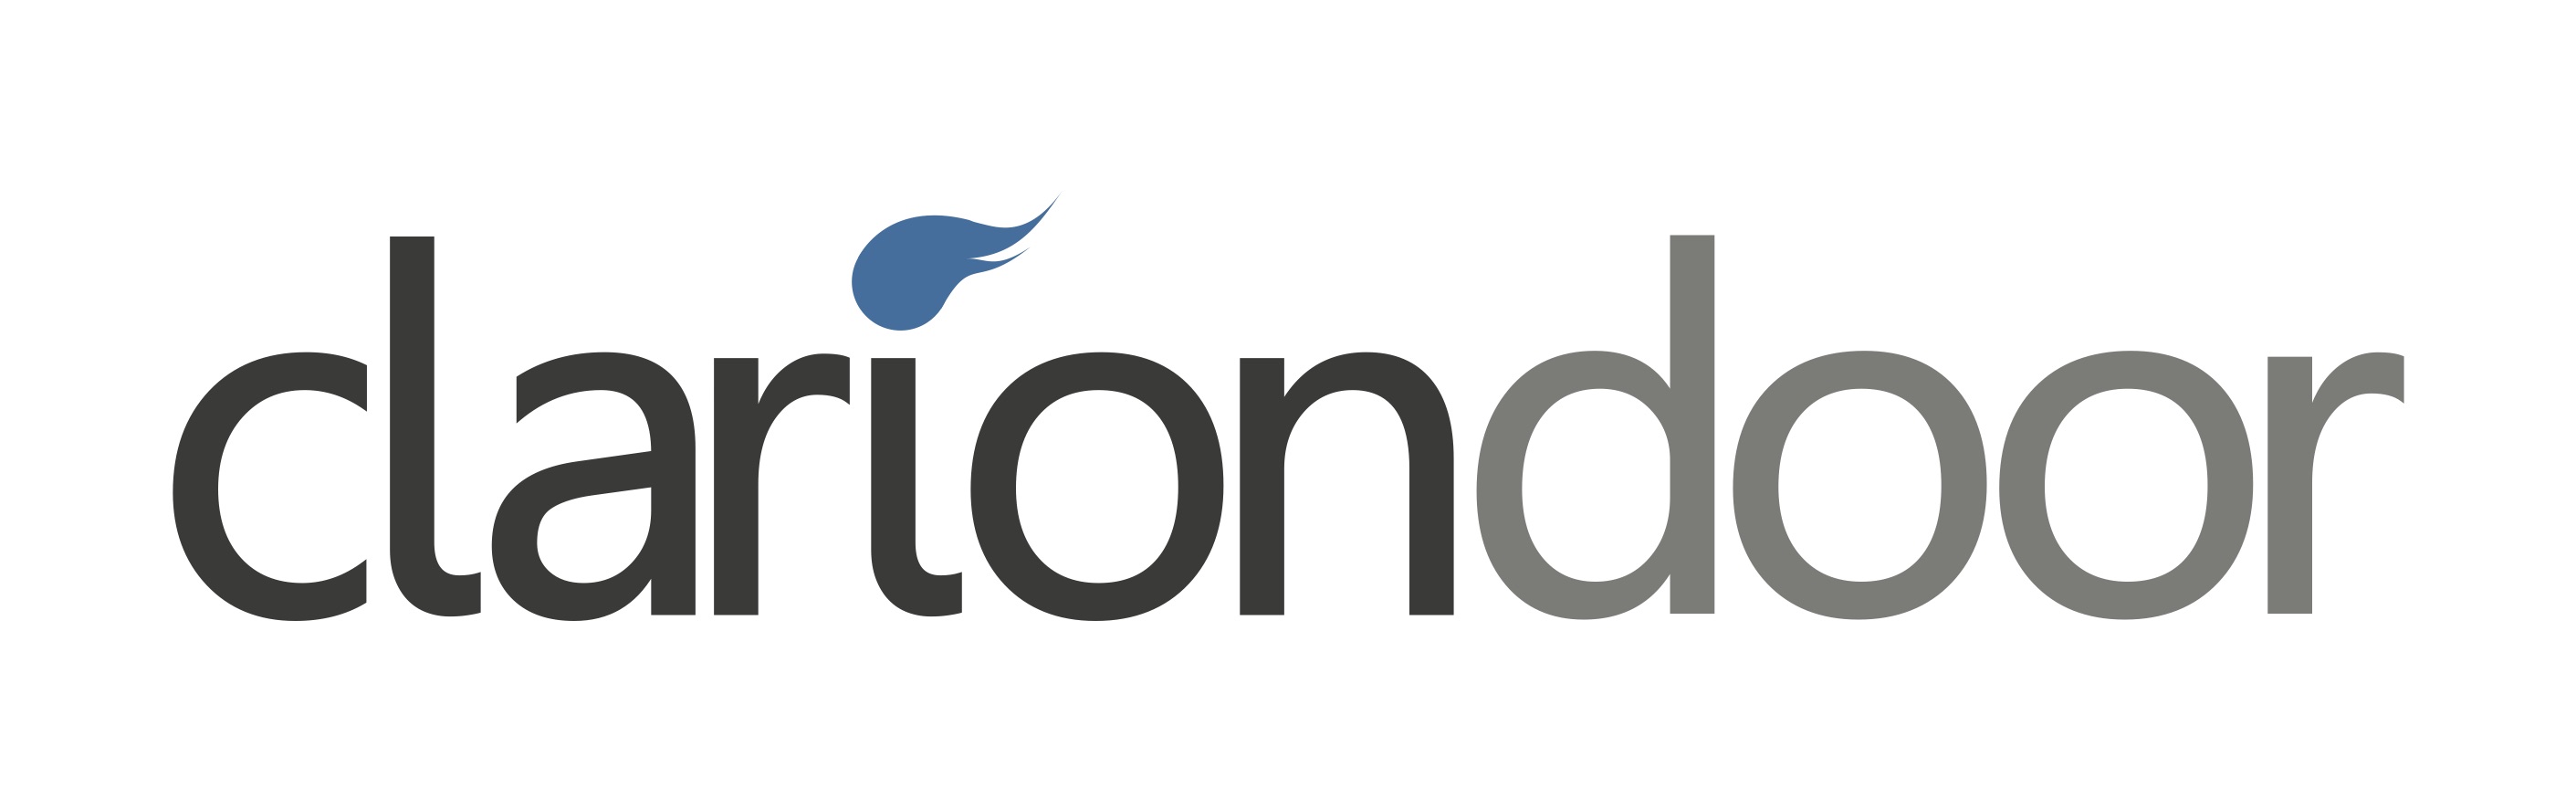 ClarionDoor Logo (1).jpg